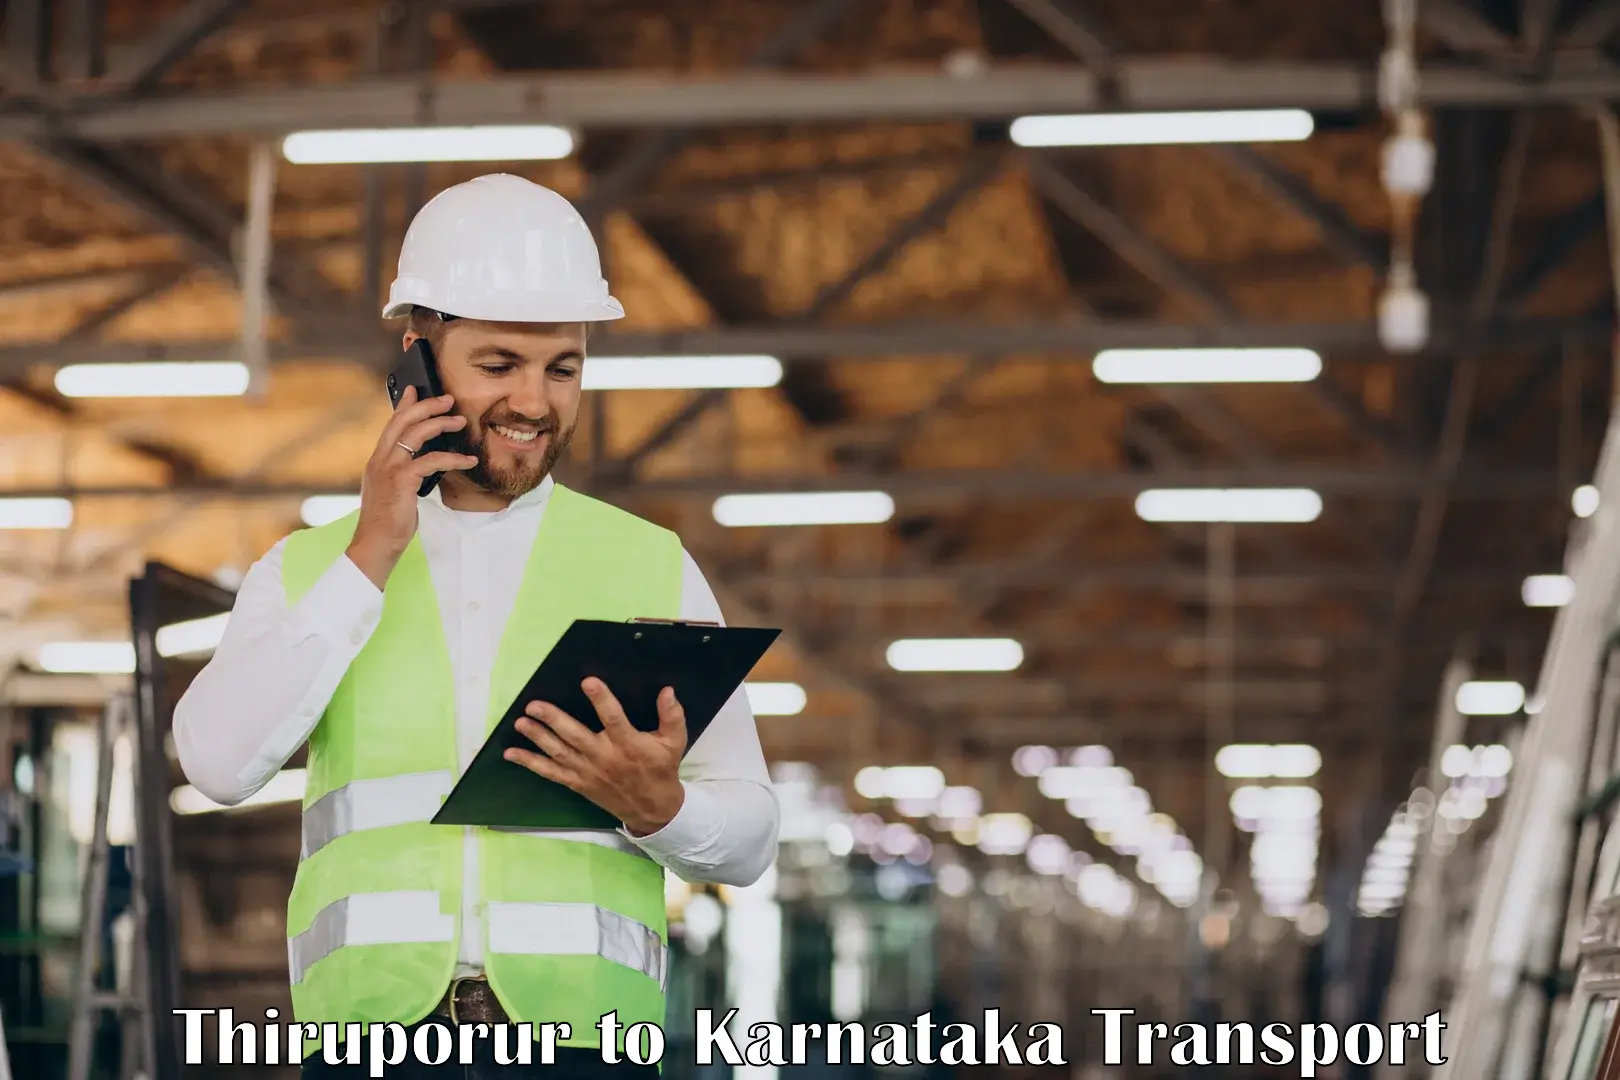 Air freight transport services Thiruporur to Kanjarakatte